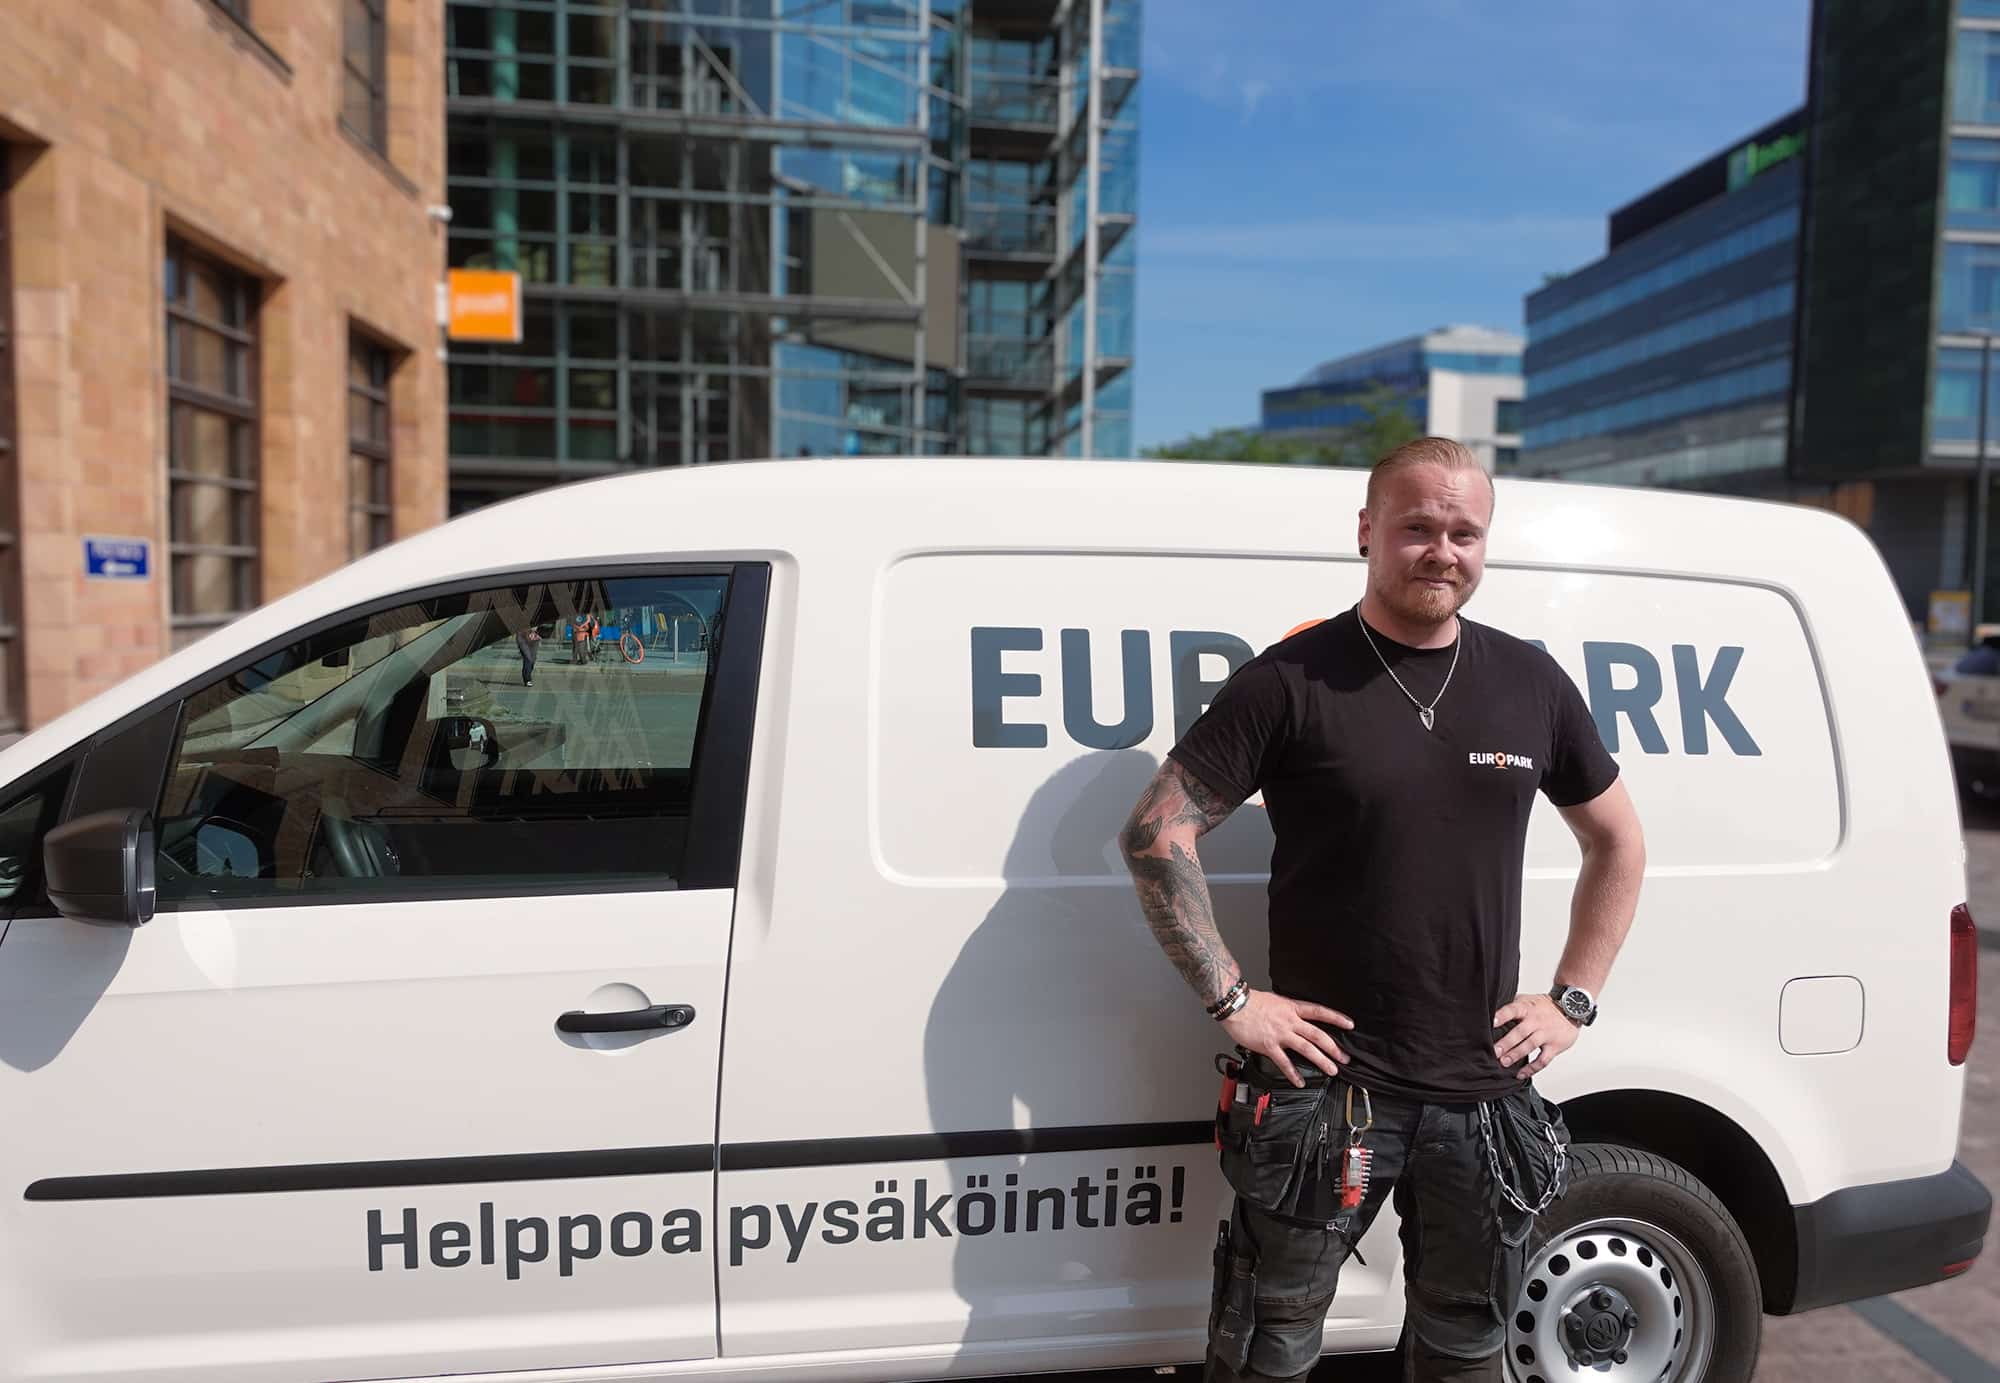 Mustiin pukeutunut henkilö nojaa EuroParkin valkoiseen pakettiautoon.